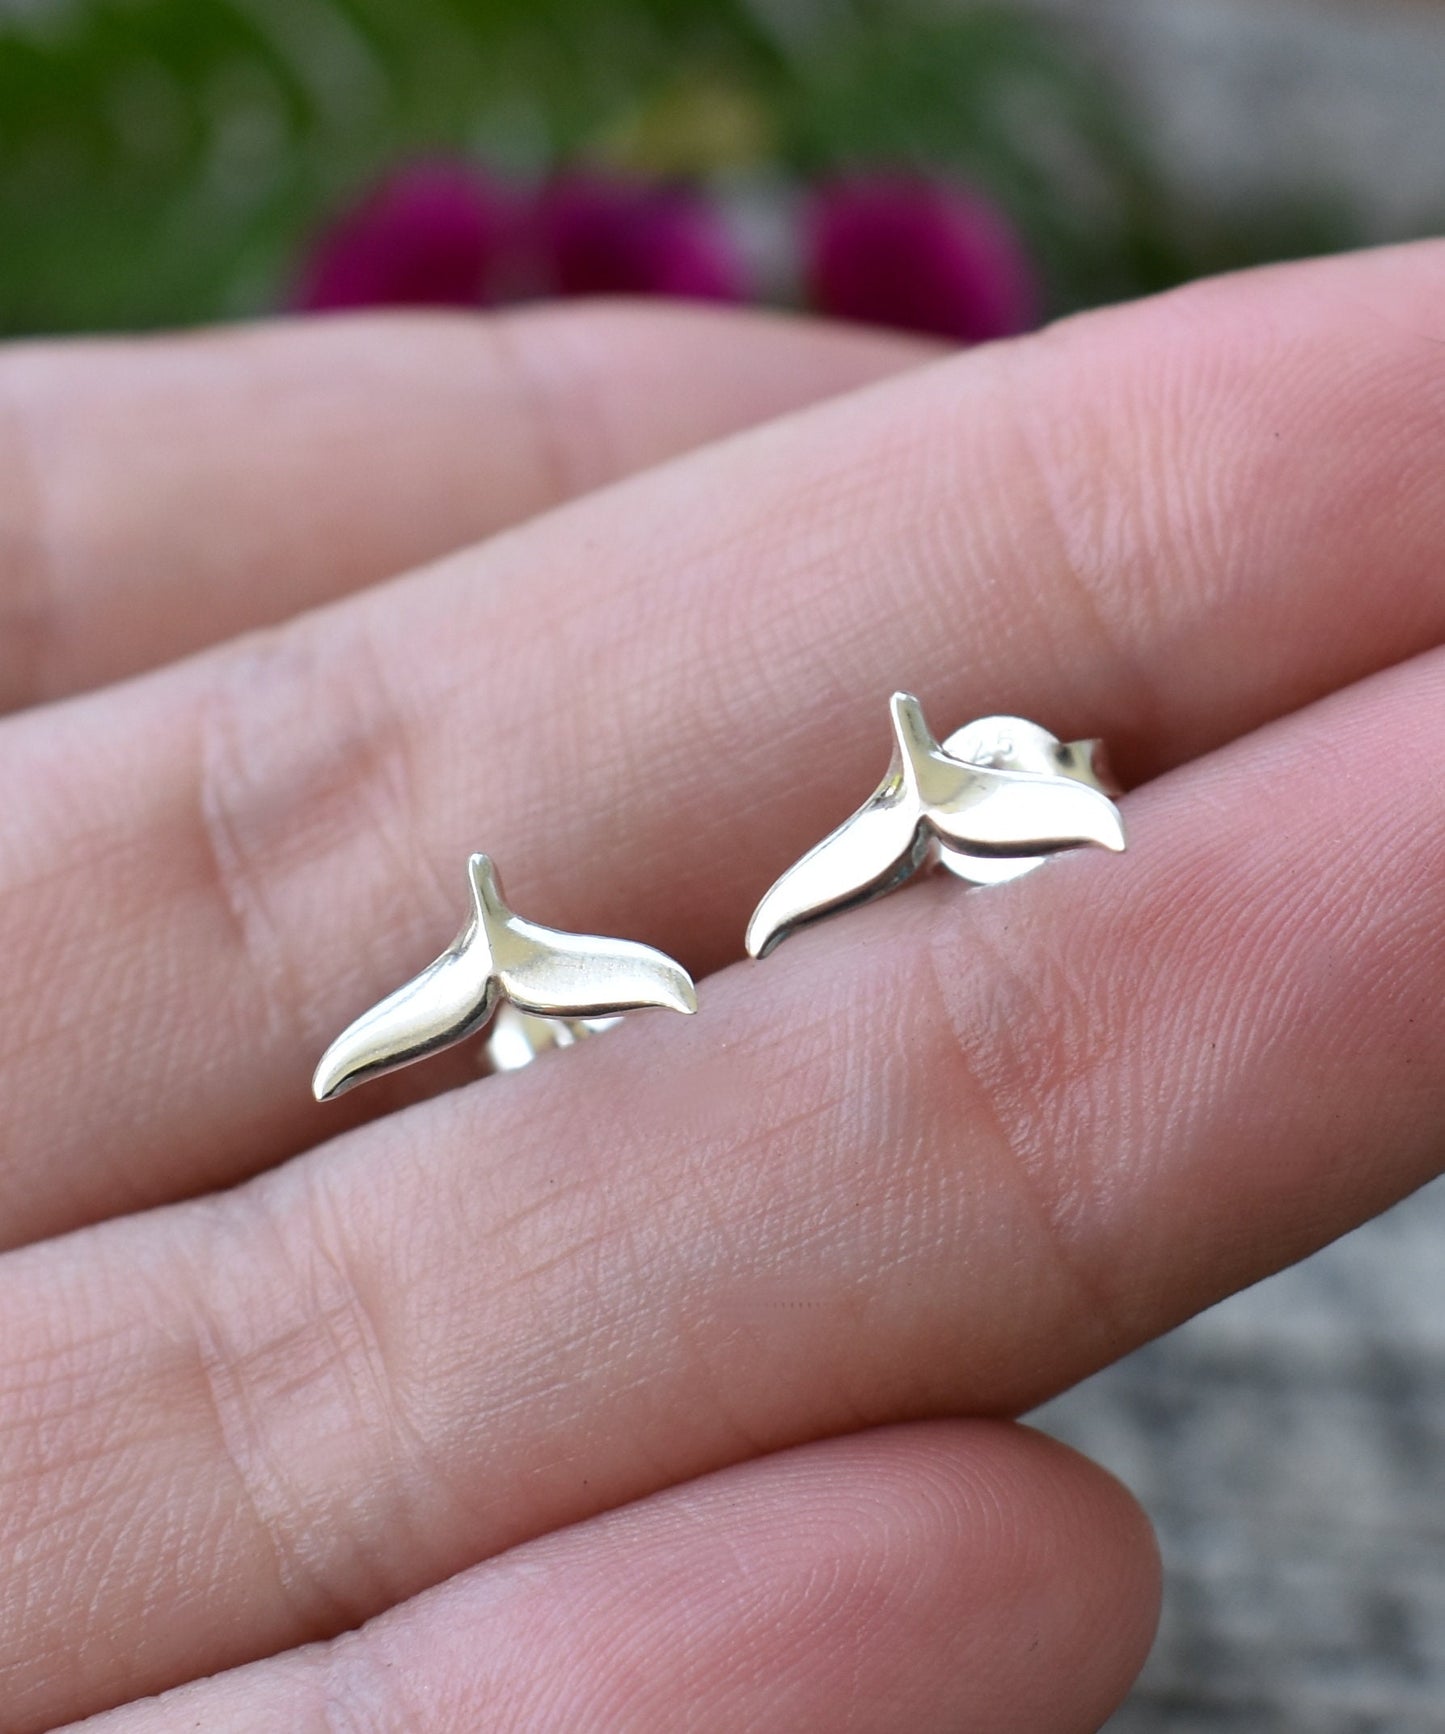 Whale Tail Earrings- Whale Stud Earrings, Whale Tail Jewelry- Silver Earrings